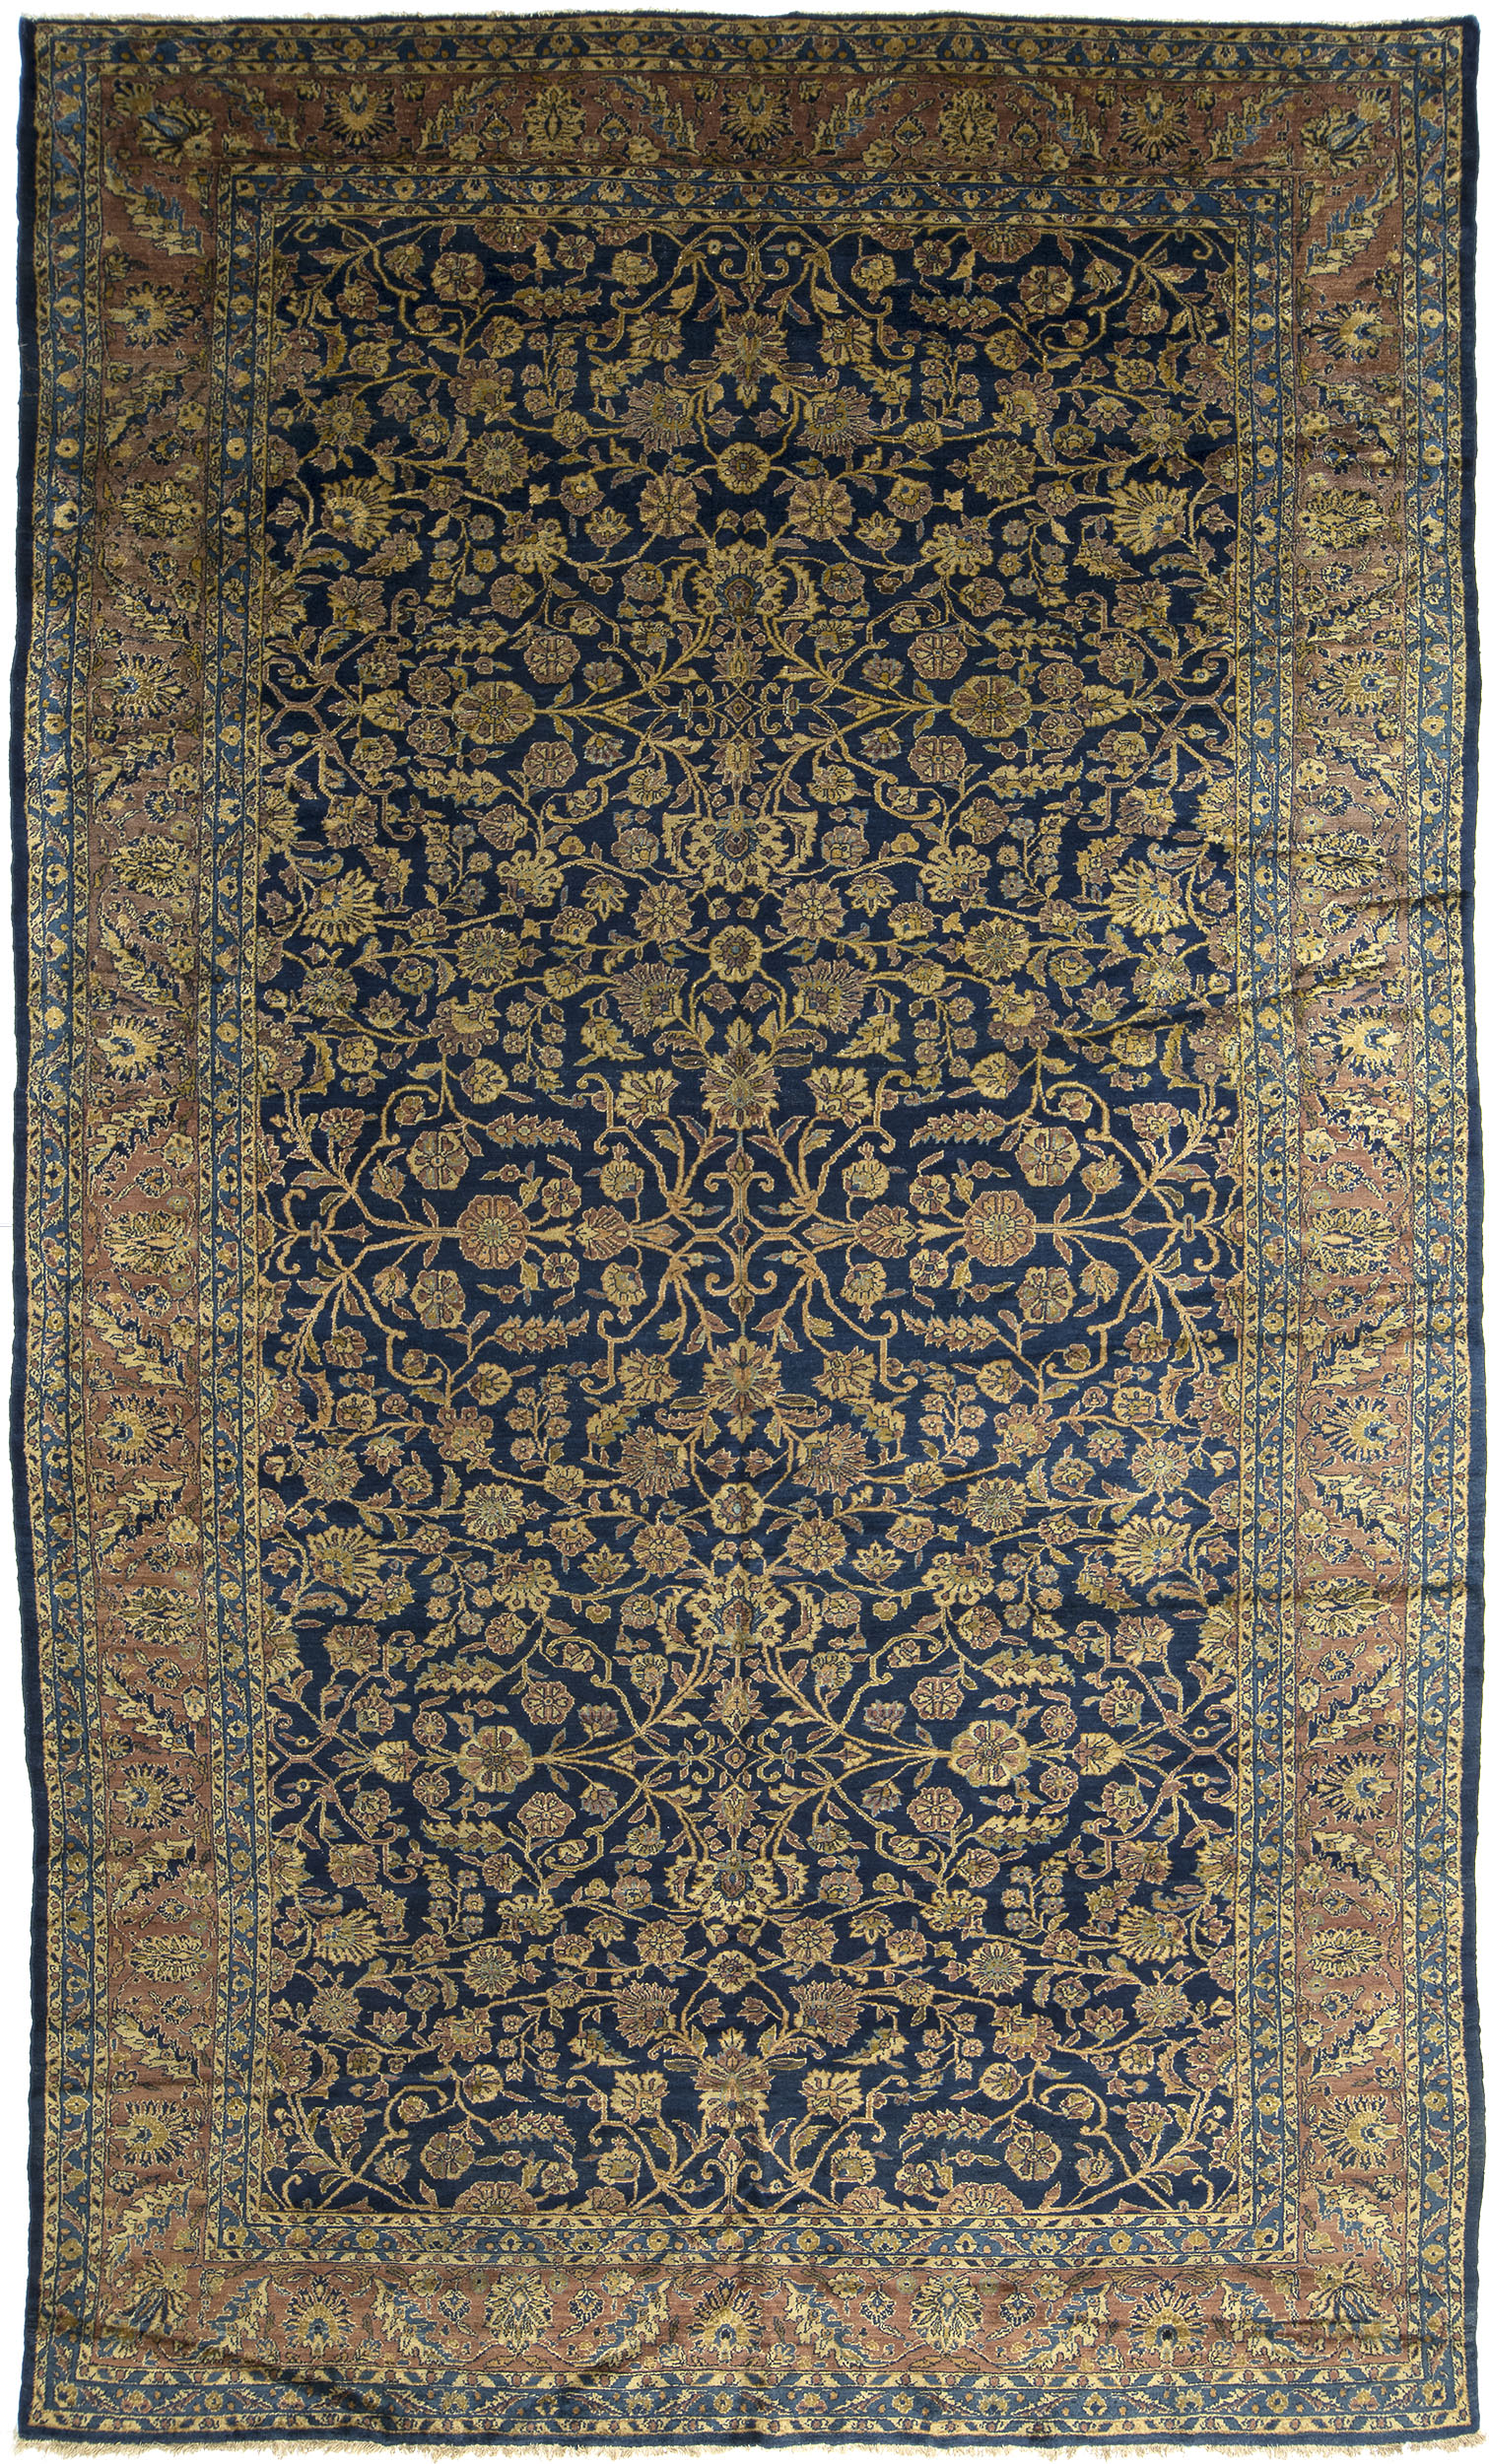 Northwest Persian Carpet 15' 3" x 8' 9" 